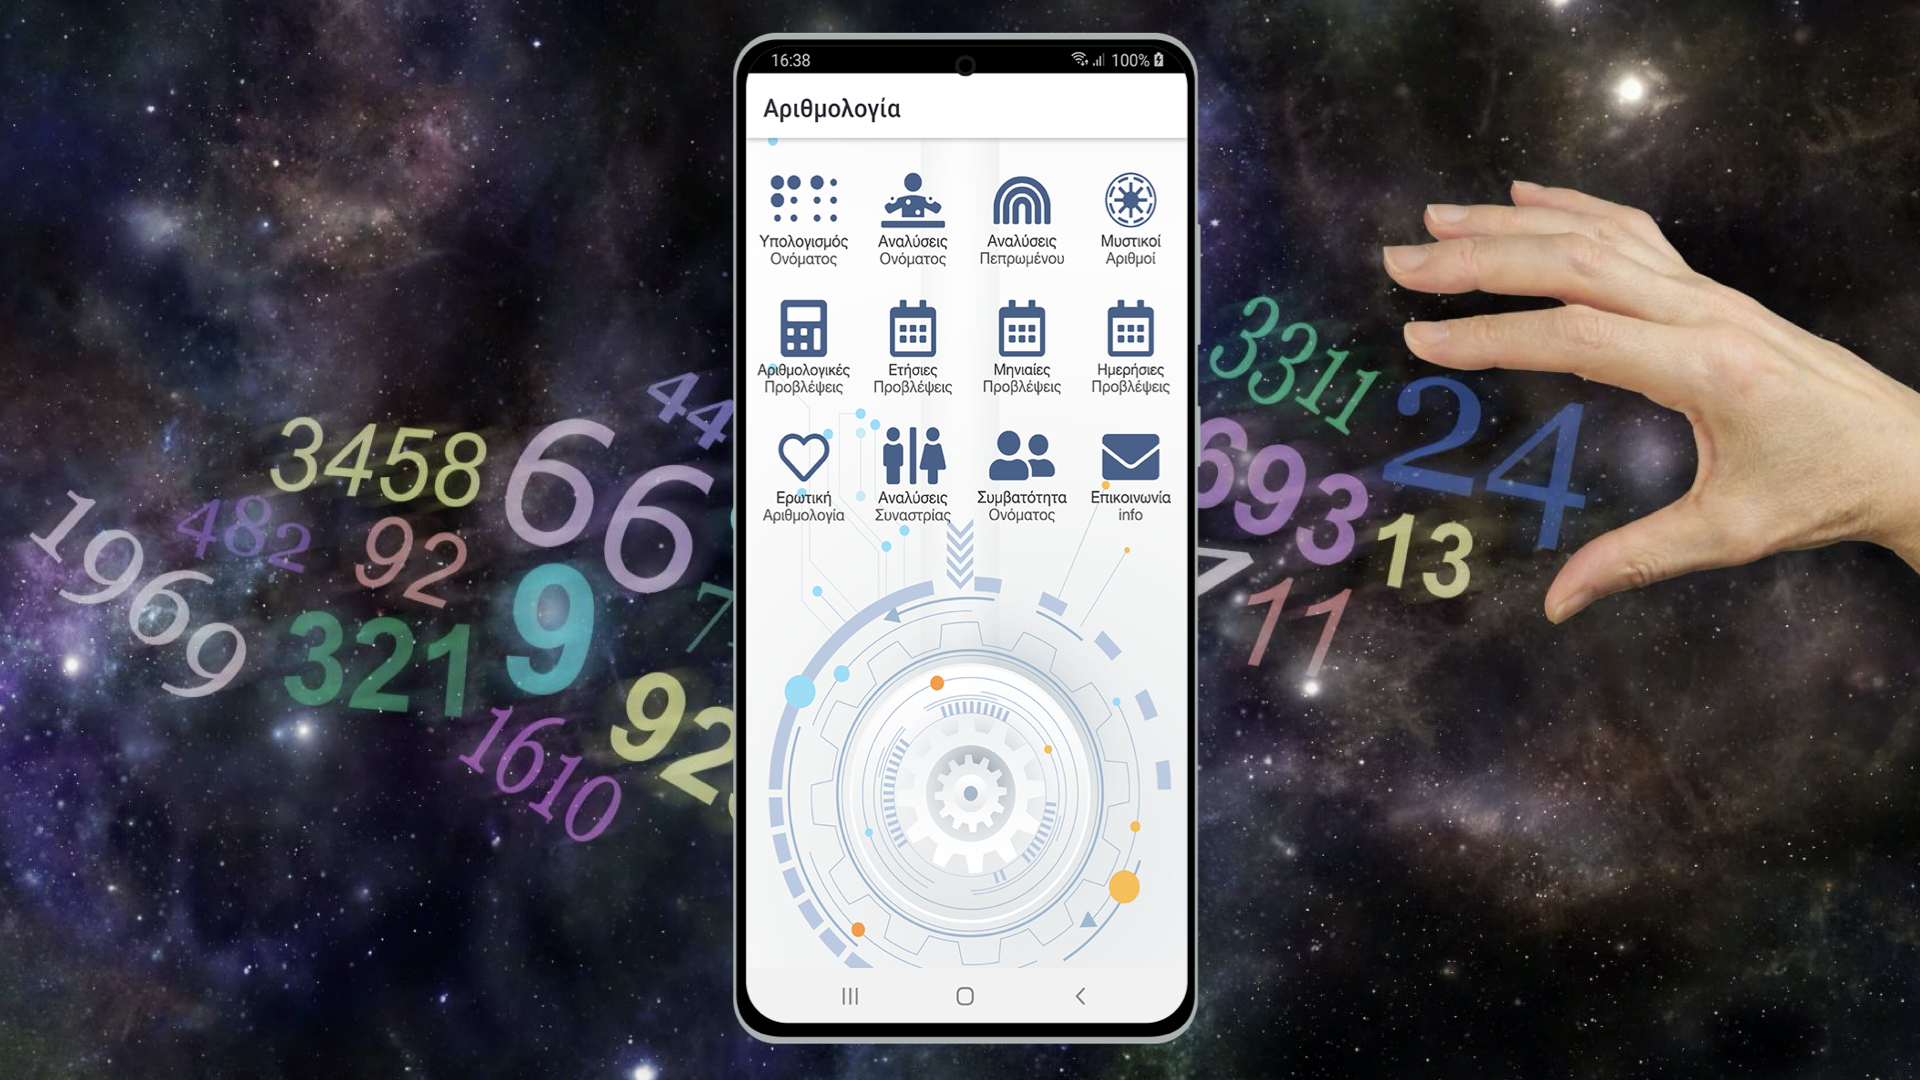 Αριθμολογία Pro App for Android Devices